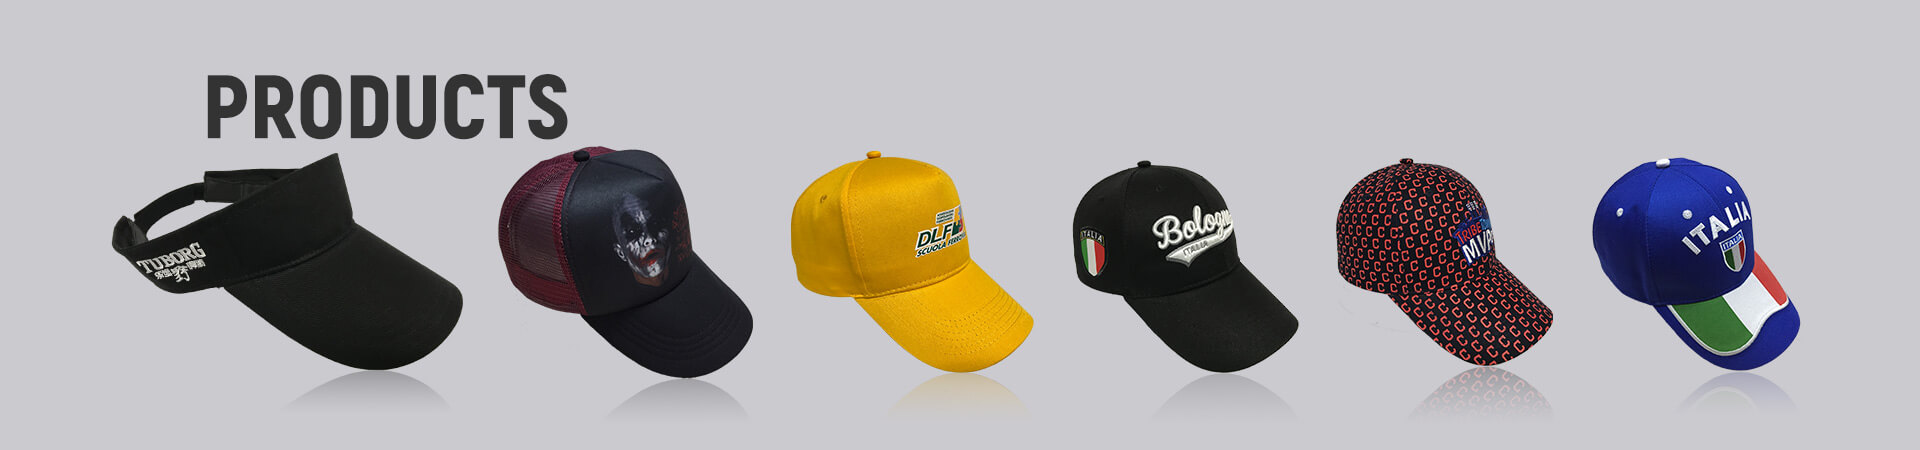 Gorra lavada Archives - Gorra de béisbol, gorra deportiva, gorra de golf, gorra de pescador, gorra de camionero